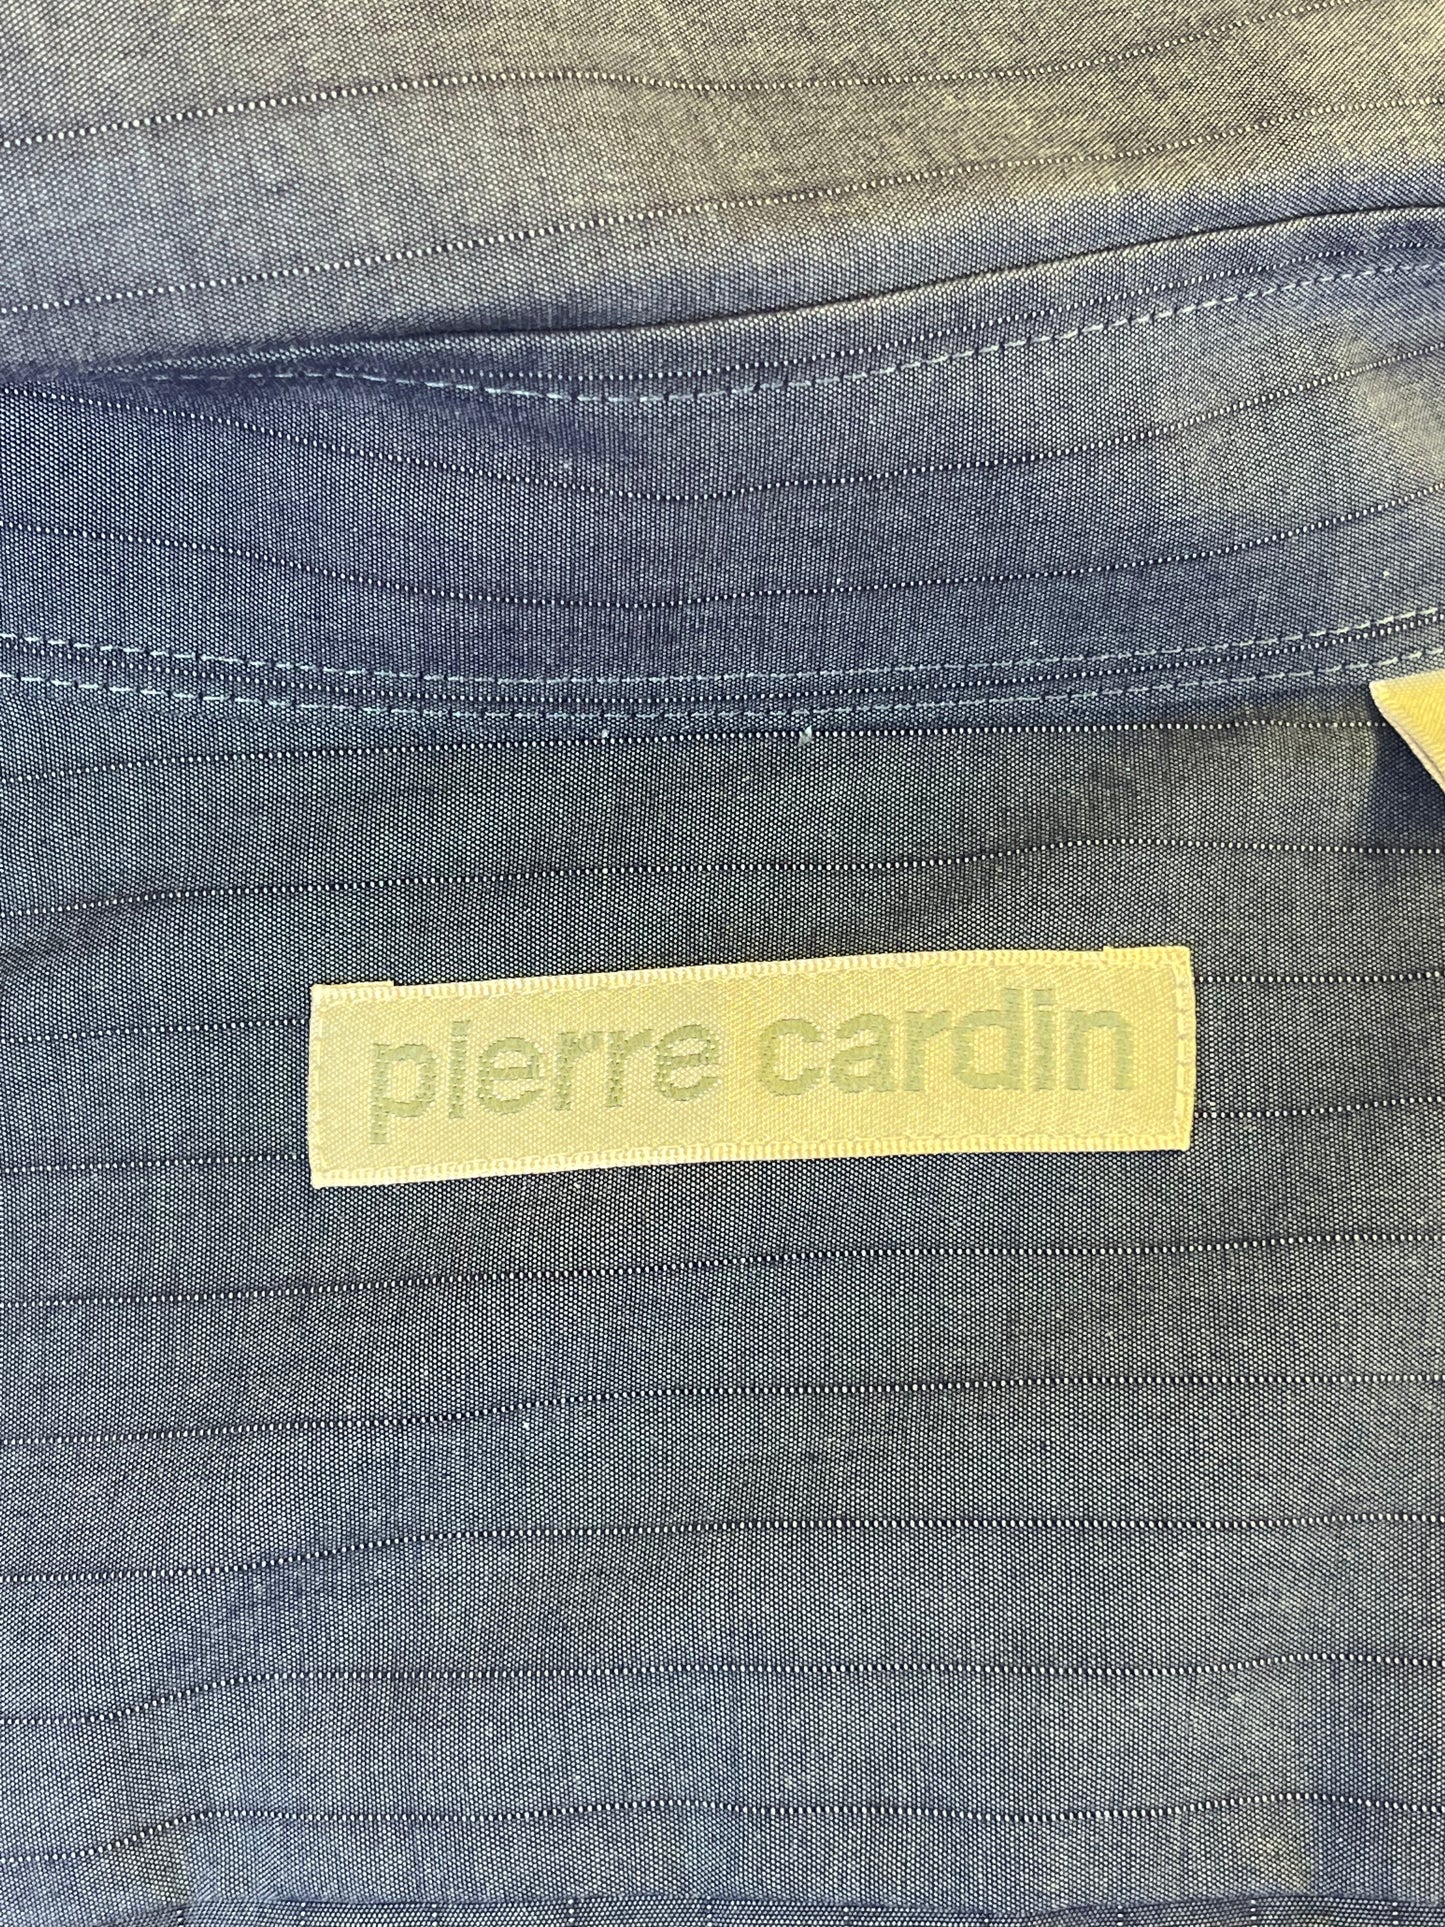 Camicia Pierre Cardin anni ‘90 blu tg. M